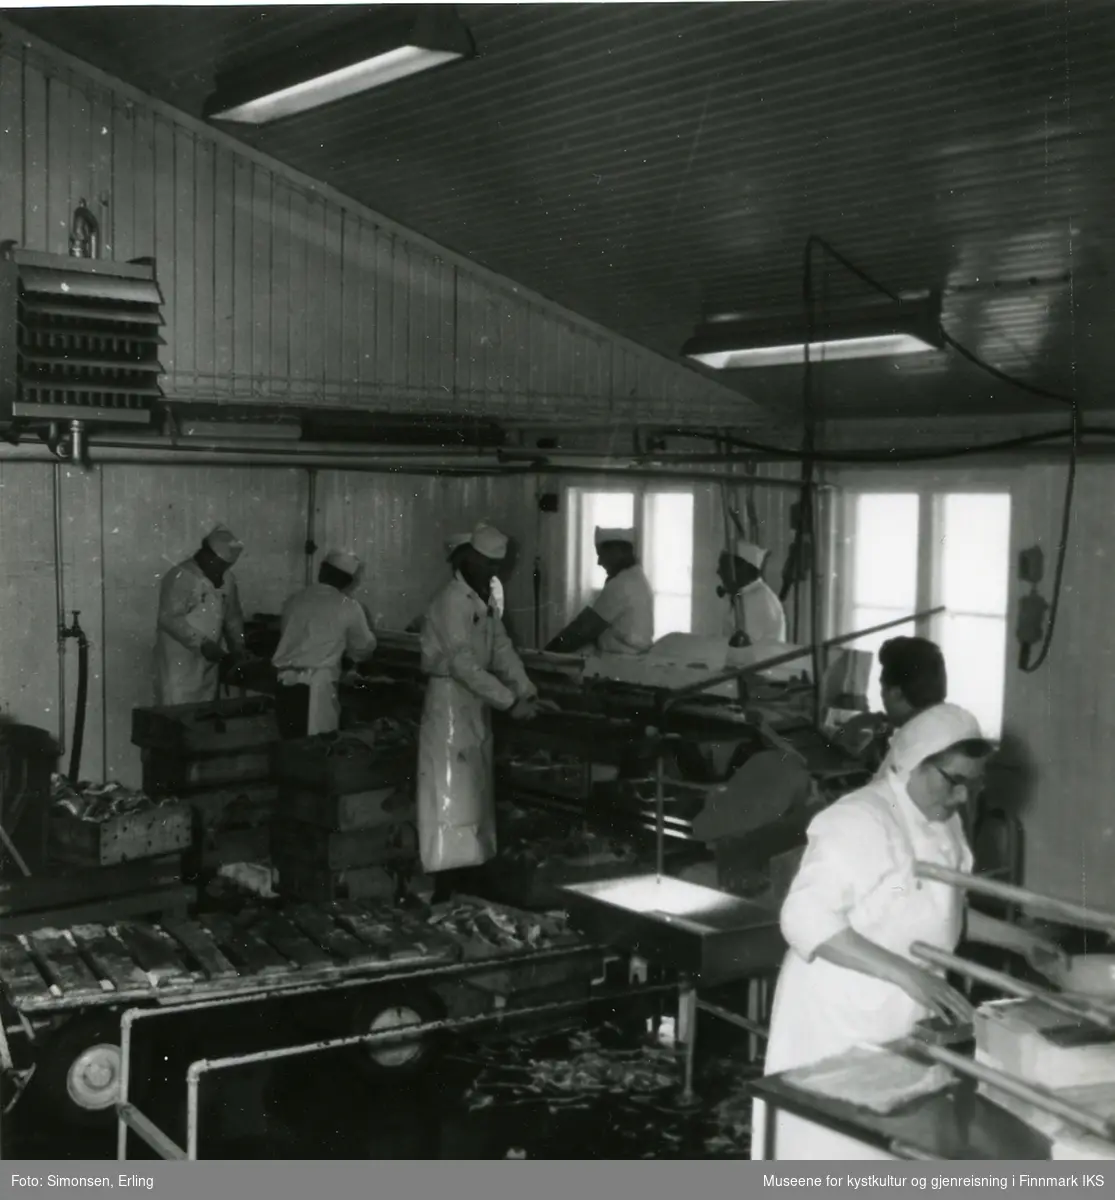 Filetarbeidere ved Fi-No-Tro anlegget i Mehamn ca 1962
Damen i forgrunn er Alida Hansen, mor til Arvid Hermann Hansen.